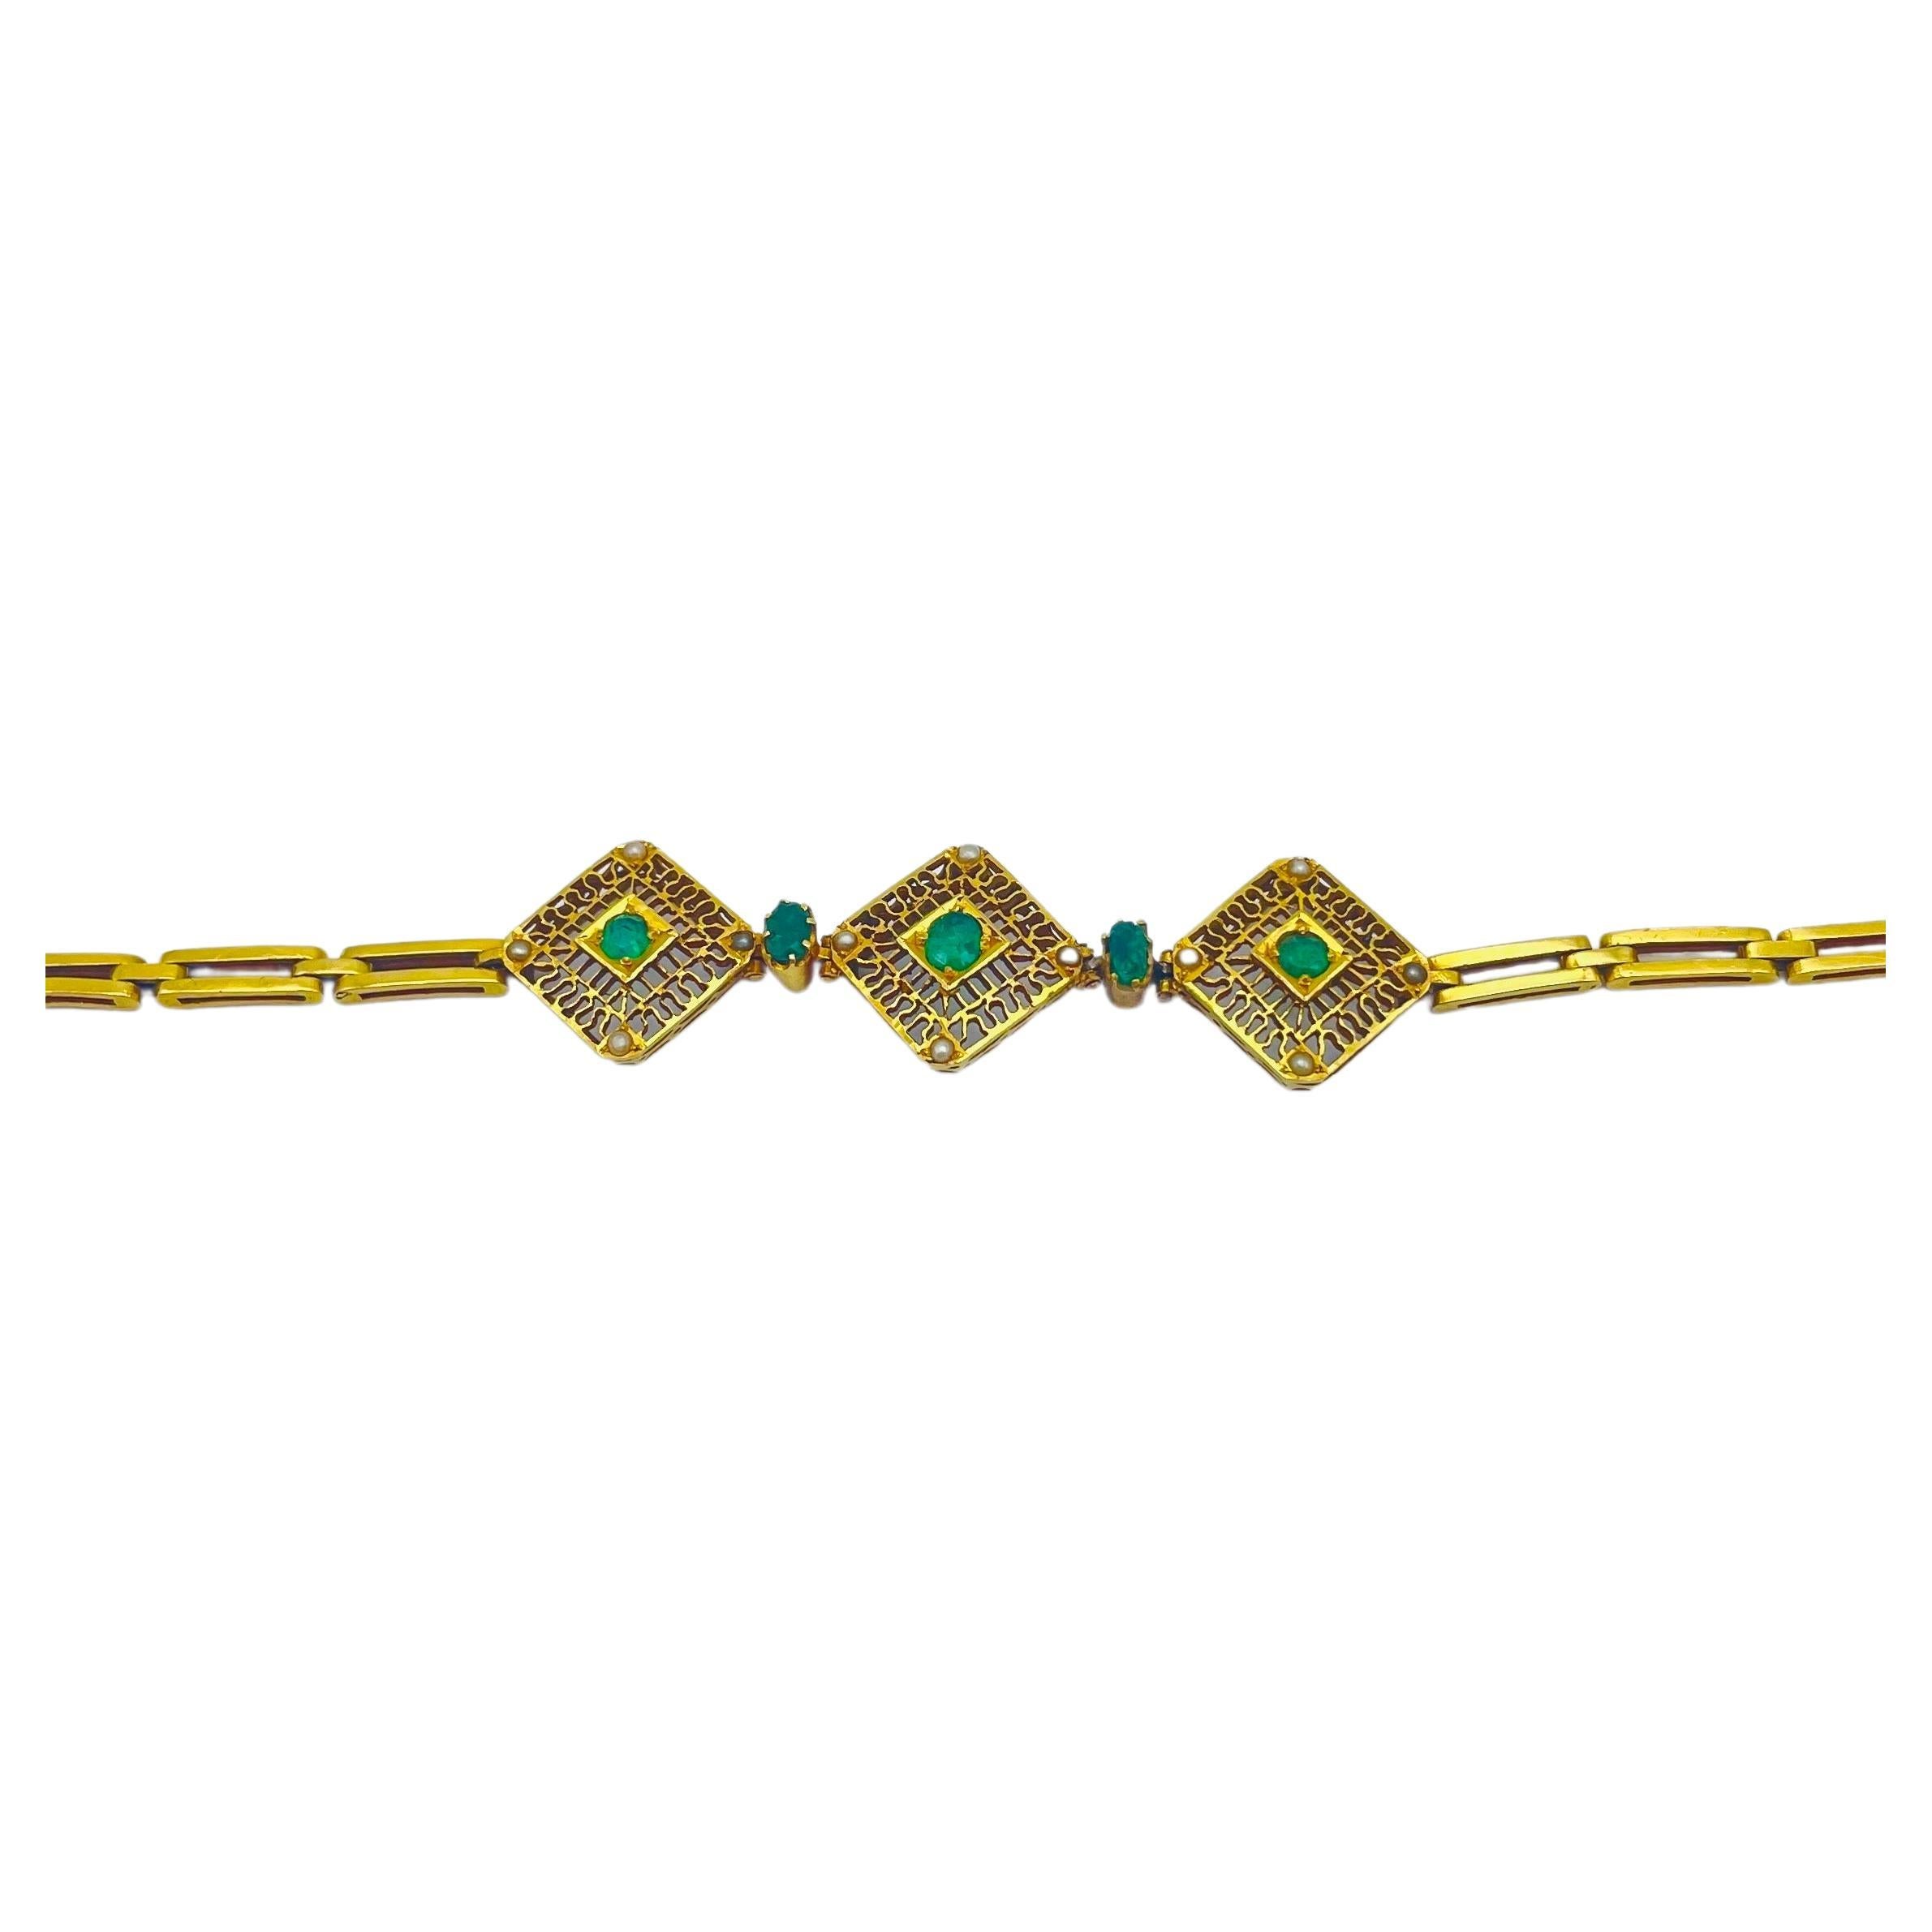 
Tauchen Sie ein in die traumhafte Schönheit dieses sorgfältig gefertigten Armbands, ein Meisterwerk aus 14-karätigem Gelbgold im Stil des Art déco. Dieses atemberaubende Schmuckstück besticht durch seine Smaragde und Perlen und zeigt ein